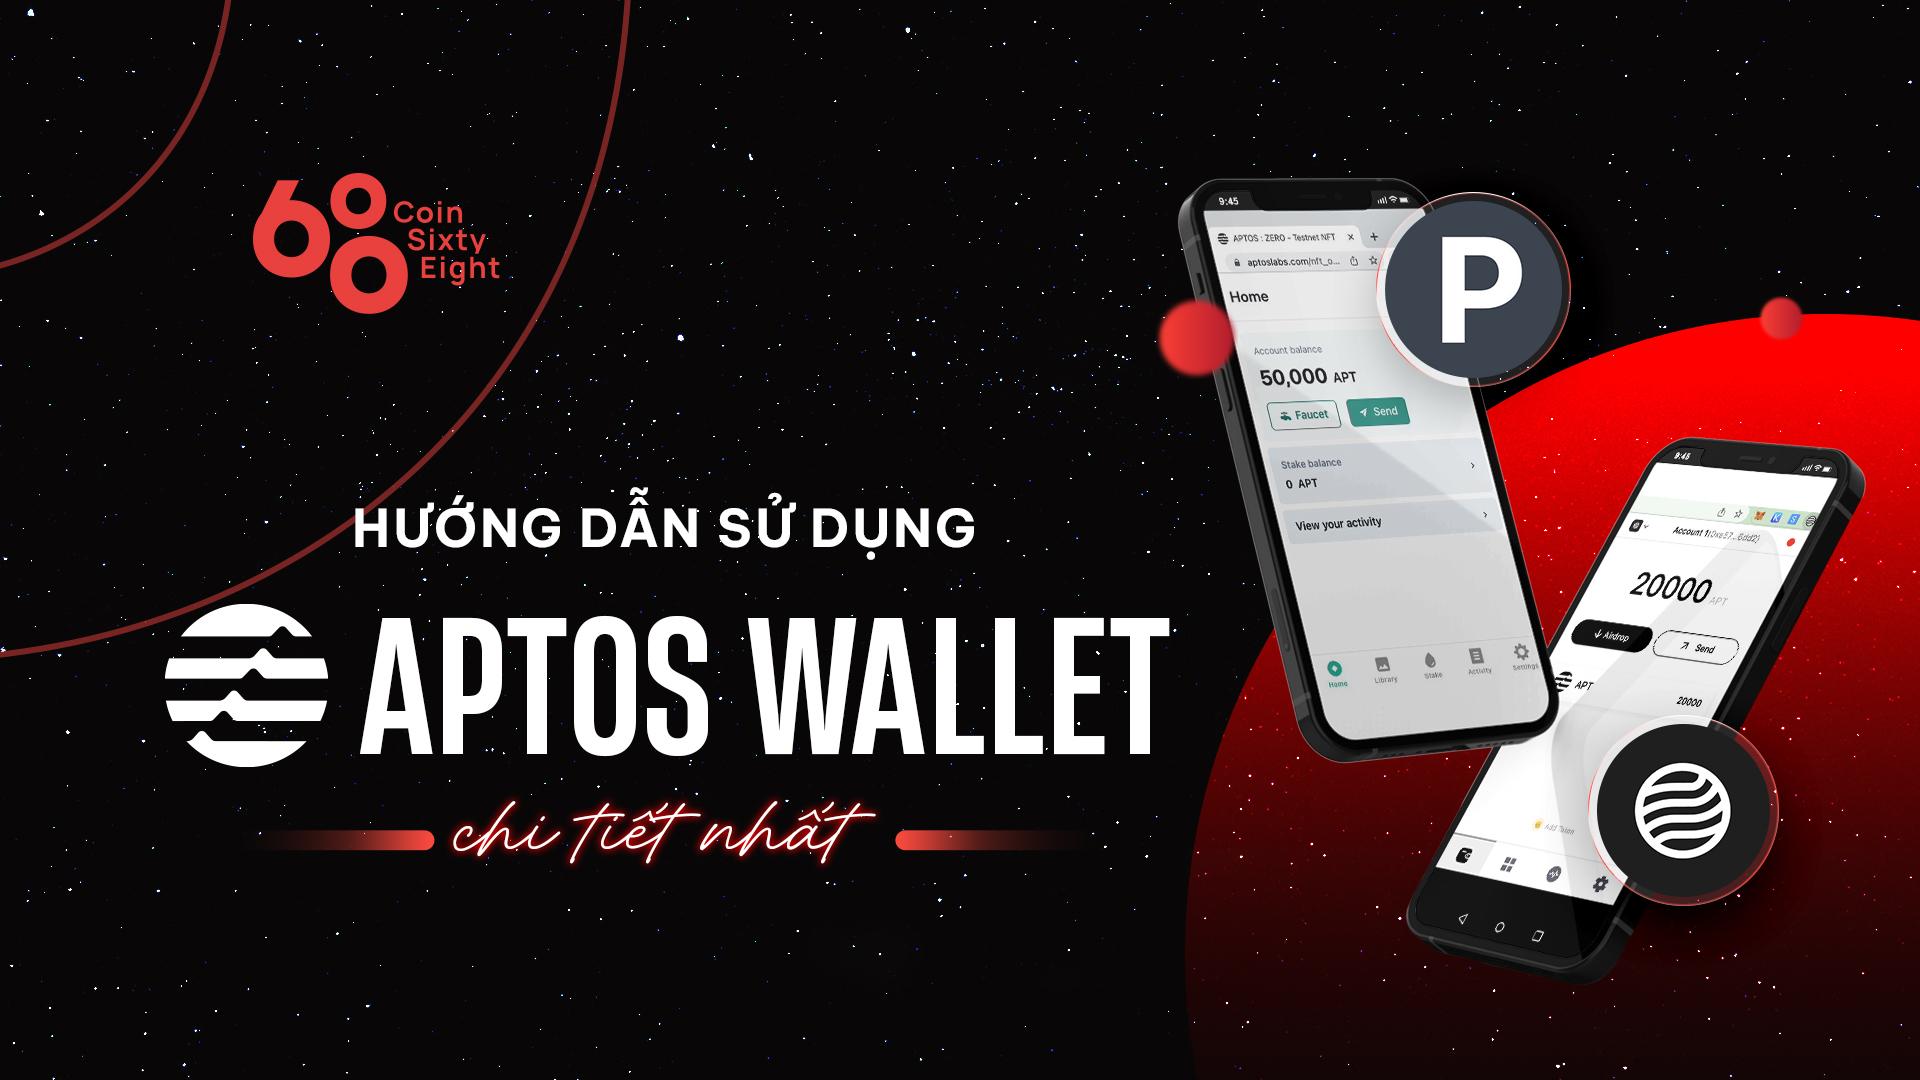 aptos-wallet-la-gi-huong-dan-su-dung-chi-tiet-aptos-wallet